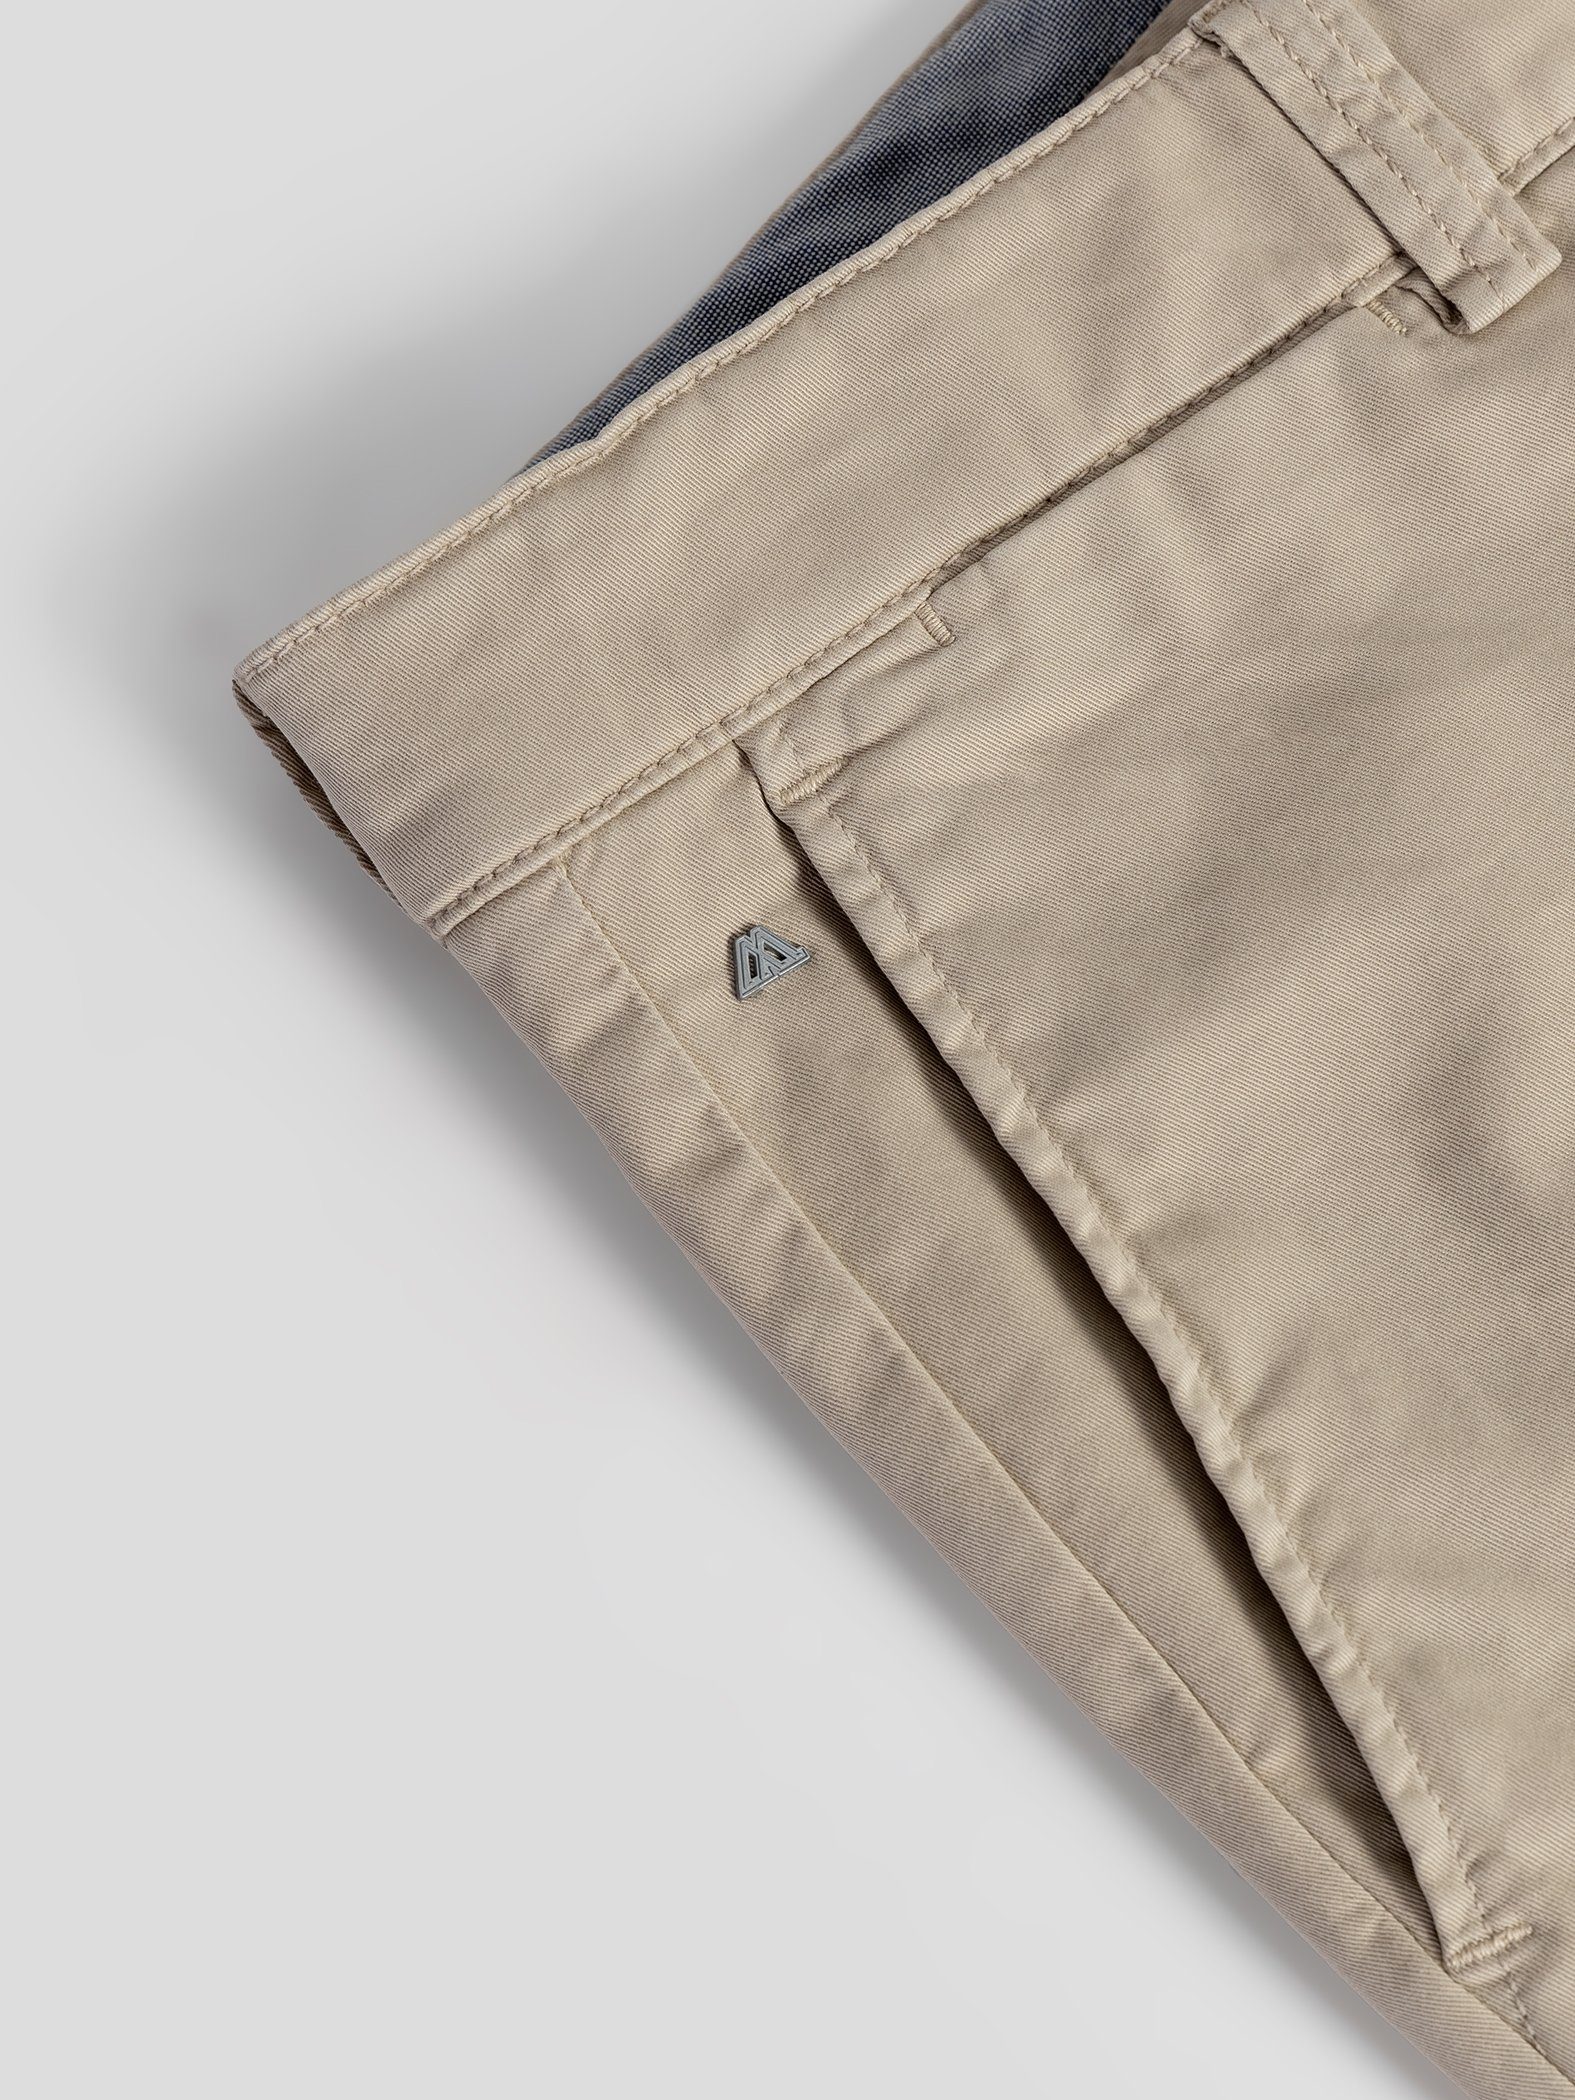 TwoMates Shorts Shorts mit elastischem sandbeige Bund, GOTS-zertifiziert Farbauswahl